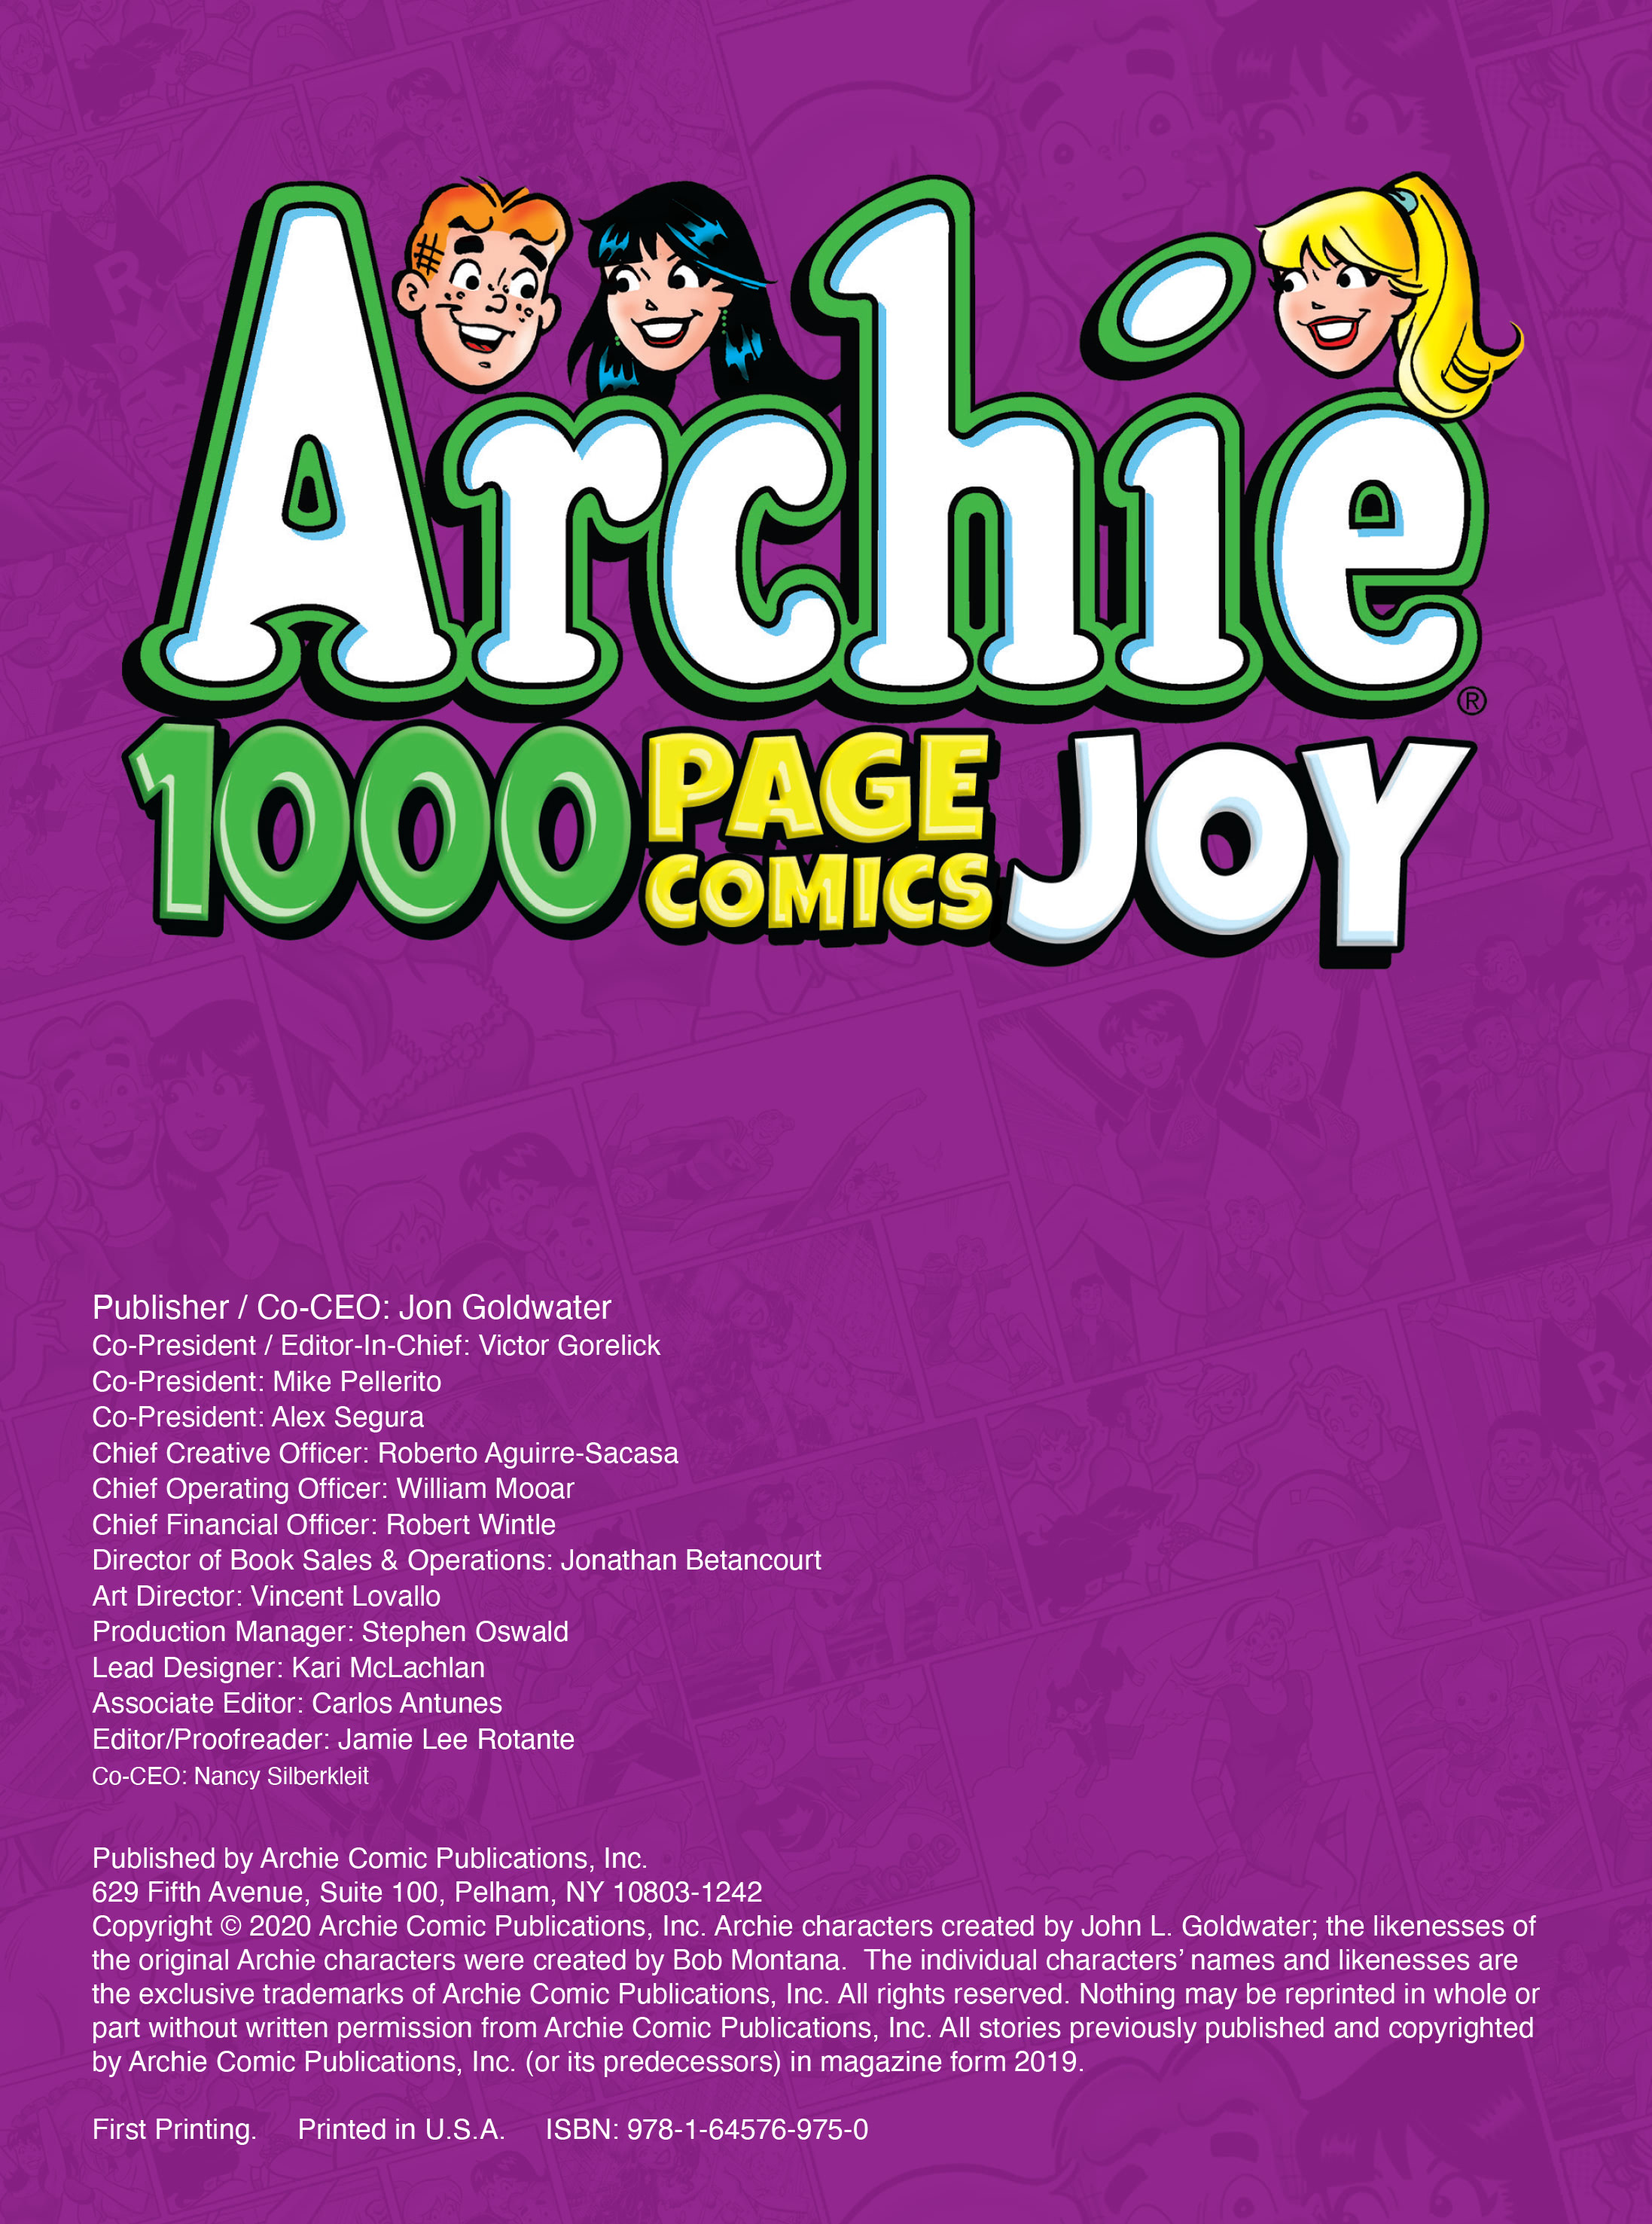 Read online Archie 1000 Page Comics Joy comic -  Issue # TPB (Part 1) - 2